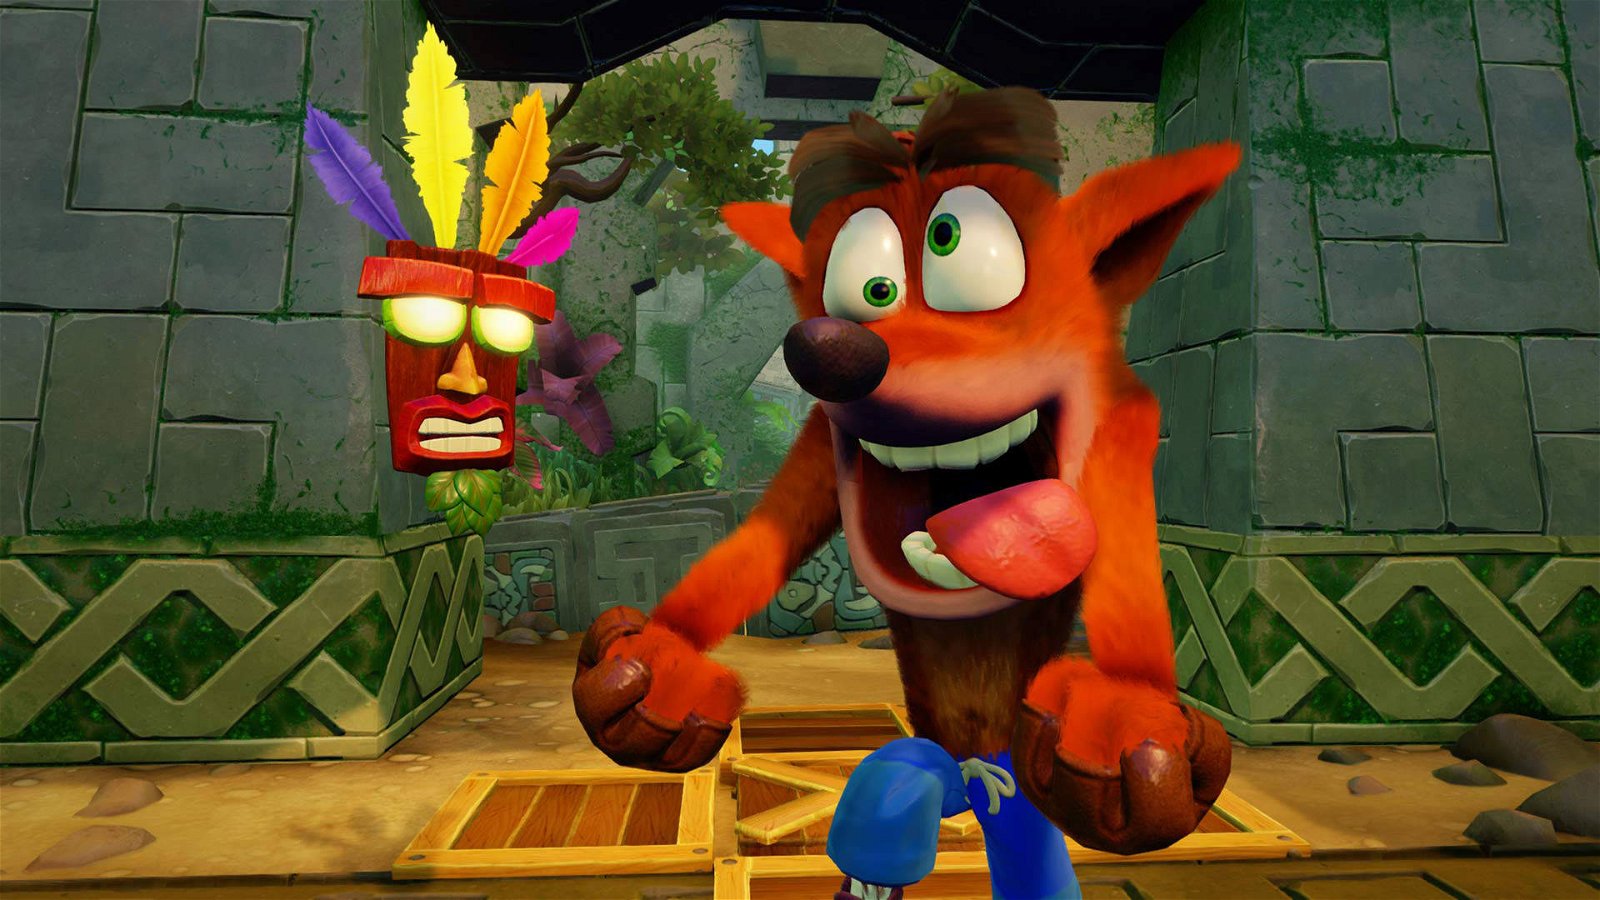 Immagine di Crash Bandicoot, Naughty Dog agì "da hacker" sulla PlayStation per sviluppare il gioco